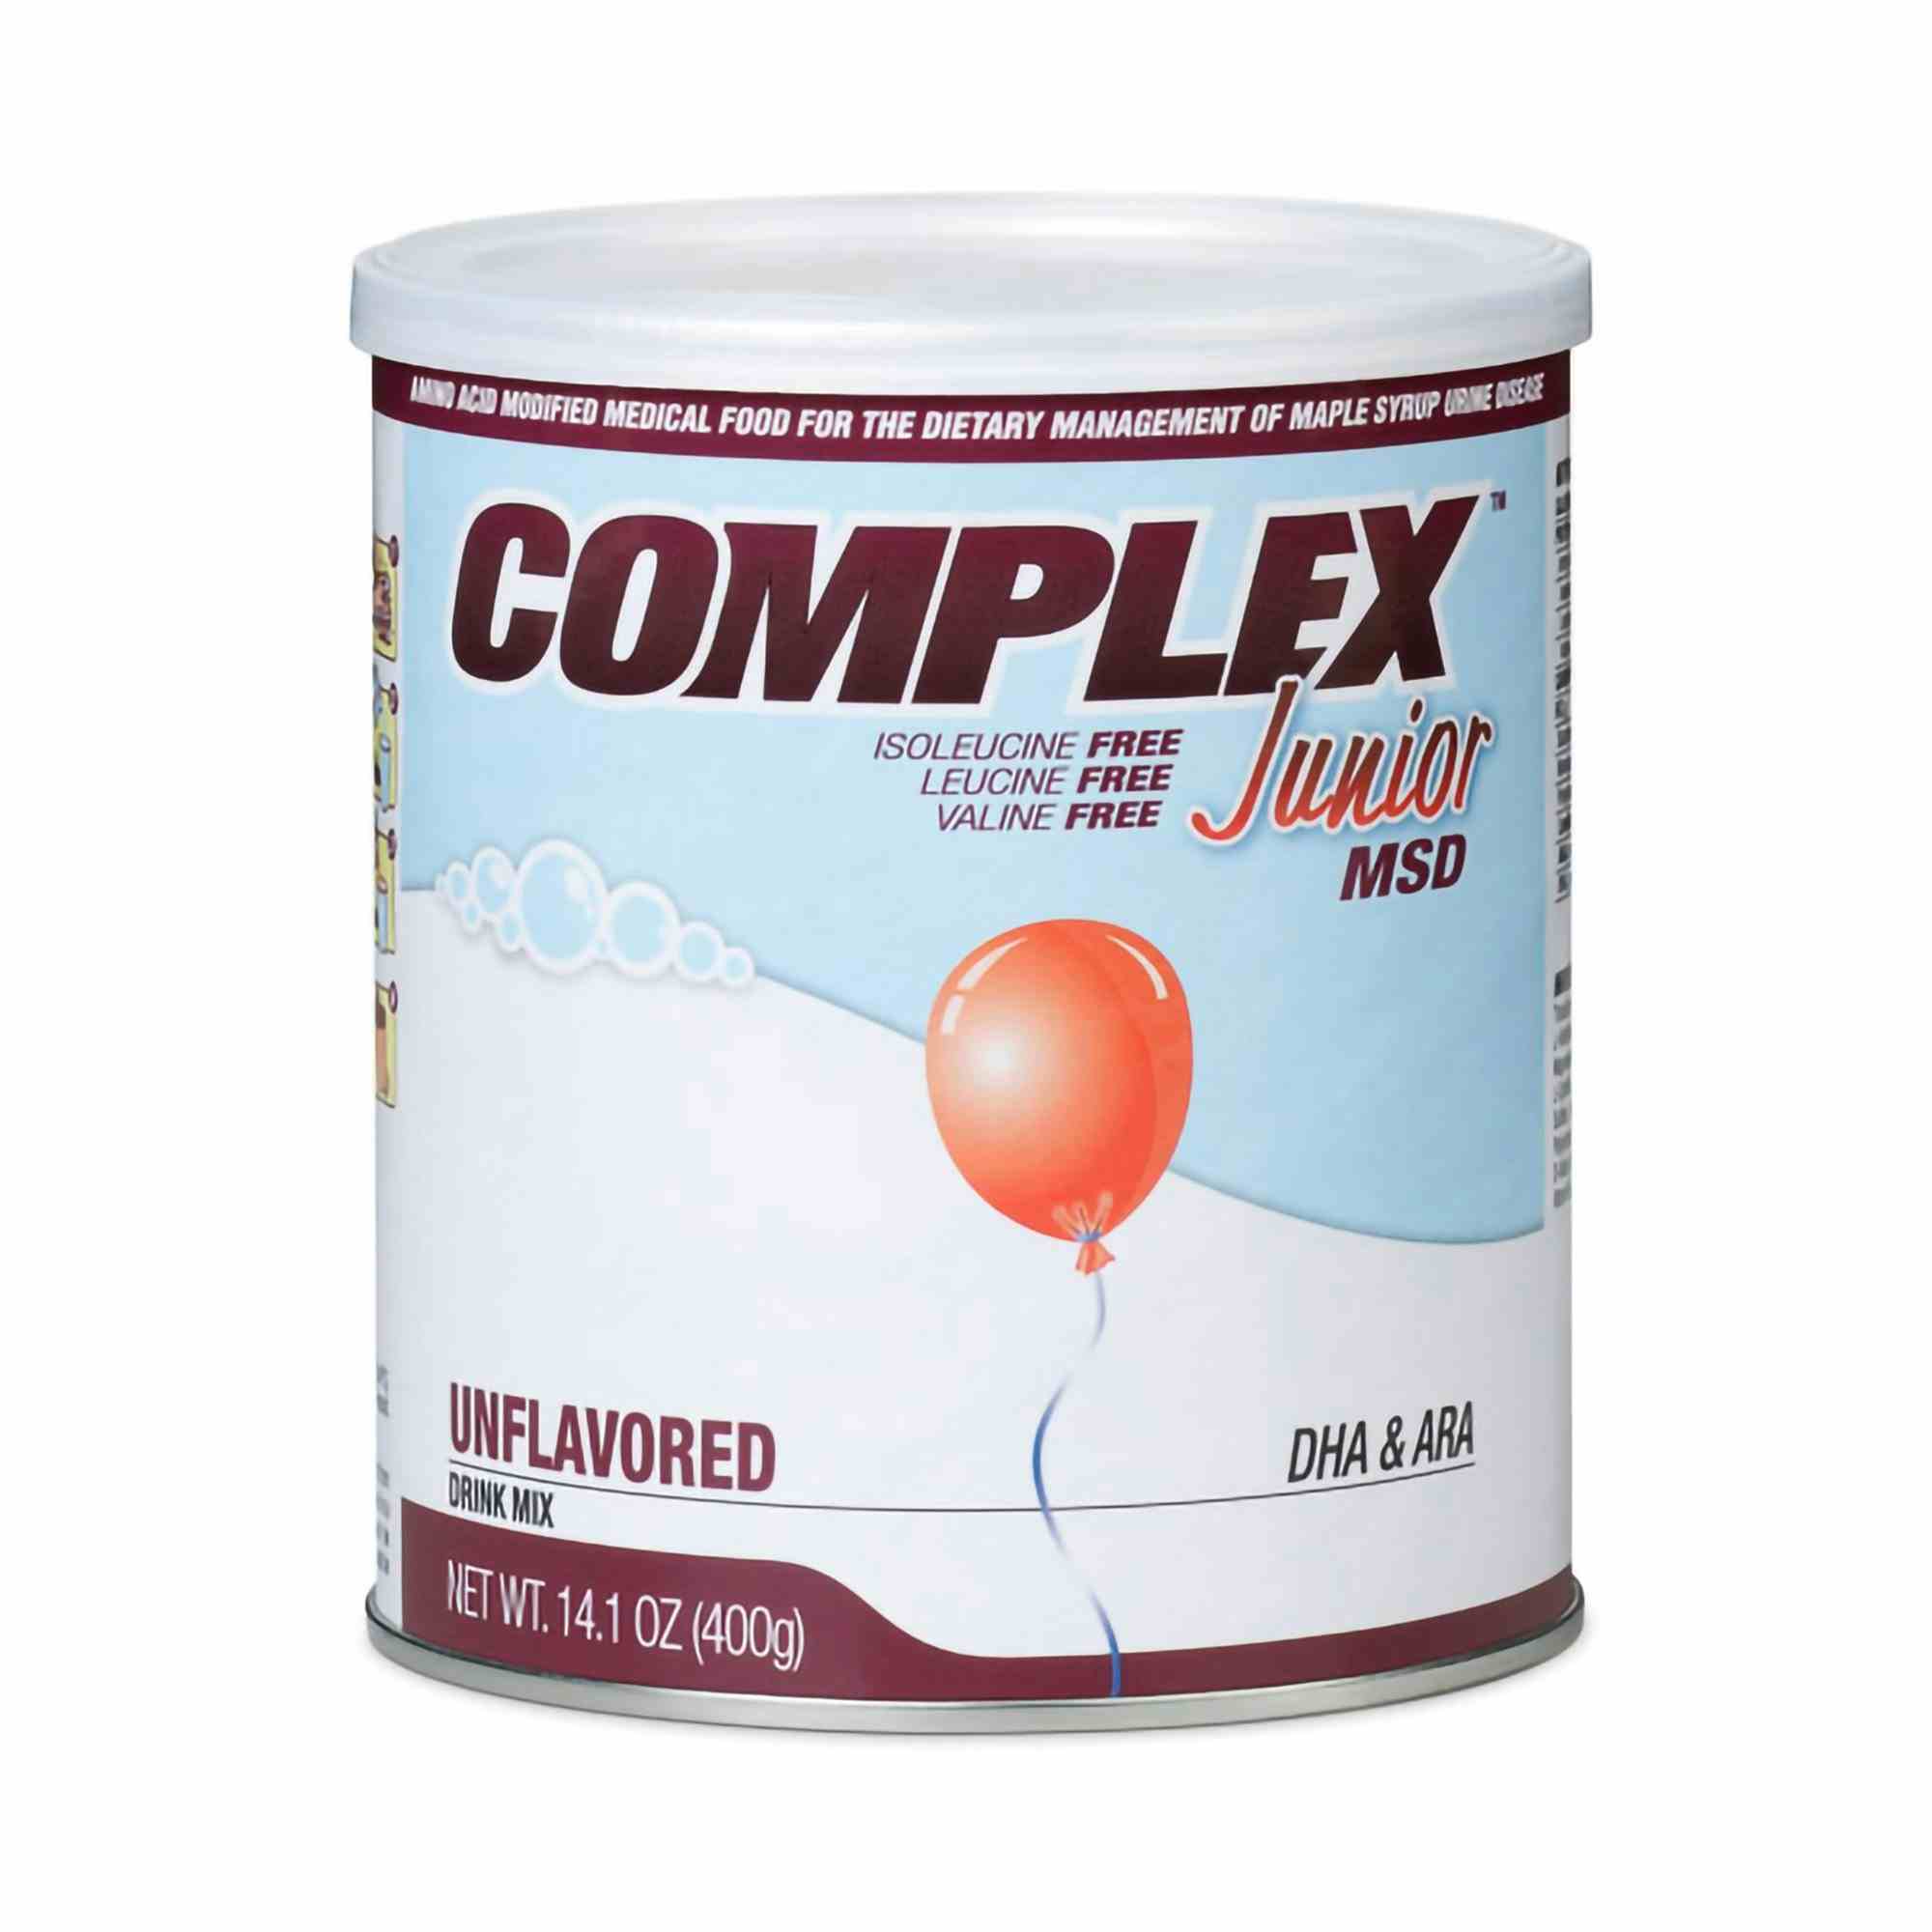 Complex Junior MSD Oral Supplement, Unflavored, Powder, 120911, 14.1 oz. - 1 can